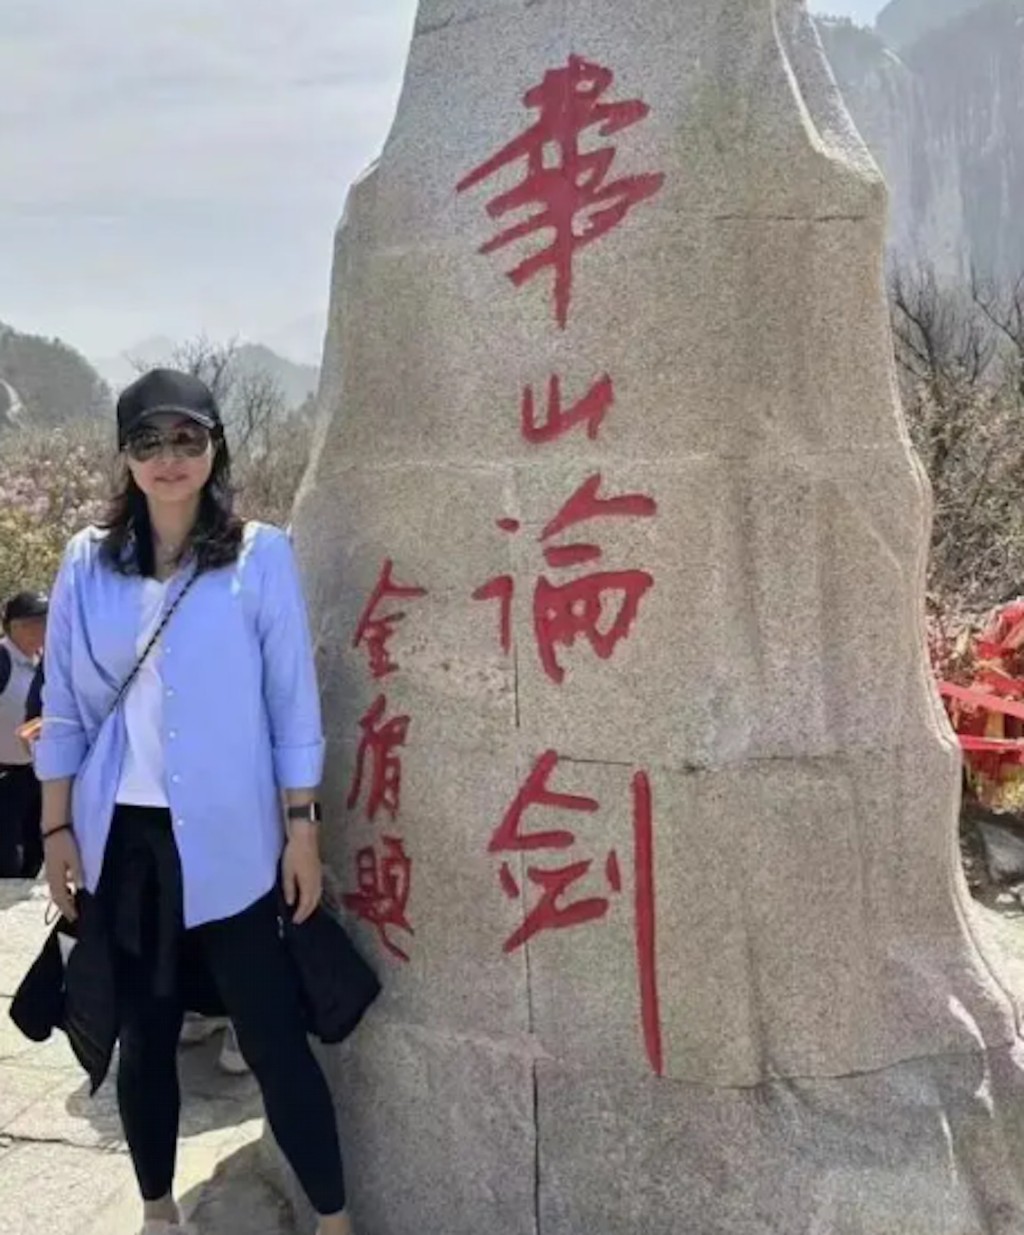 郭晶晶在金庸题字的「华山论剑」石前拍照。